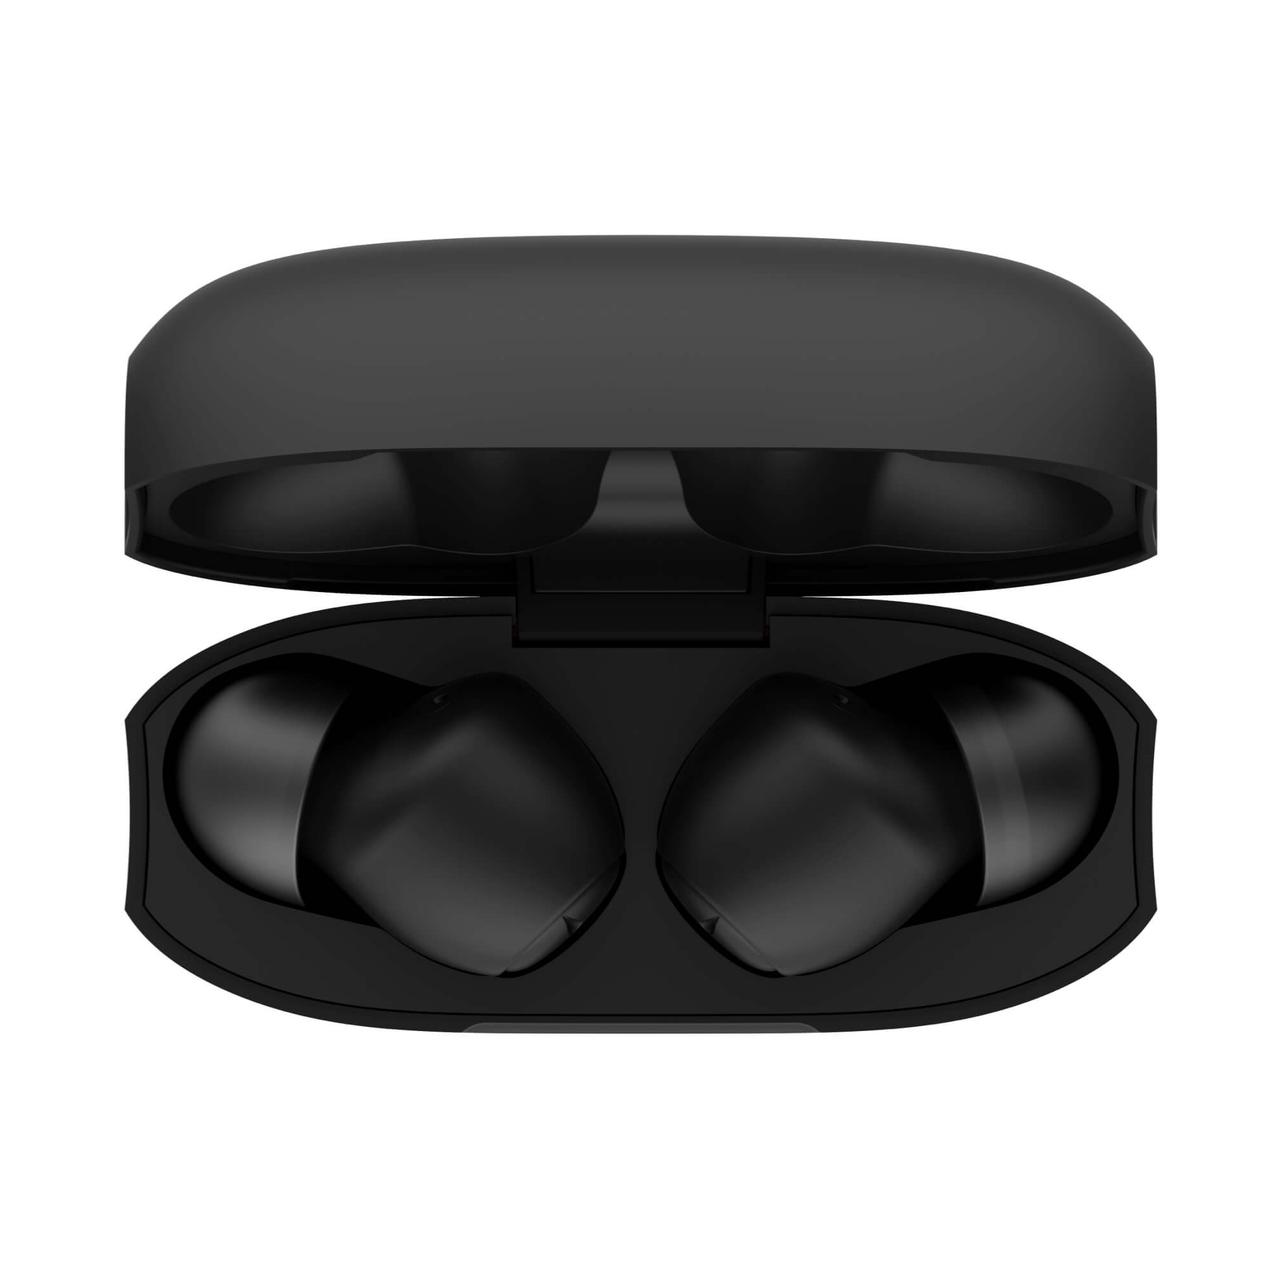 Bluetooth-Kopfhörer mit Schnellade-Technologie und Mikrofon, offene Ladebox Innenansicht